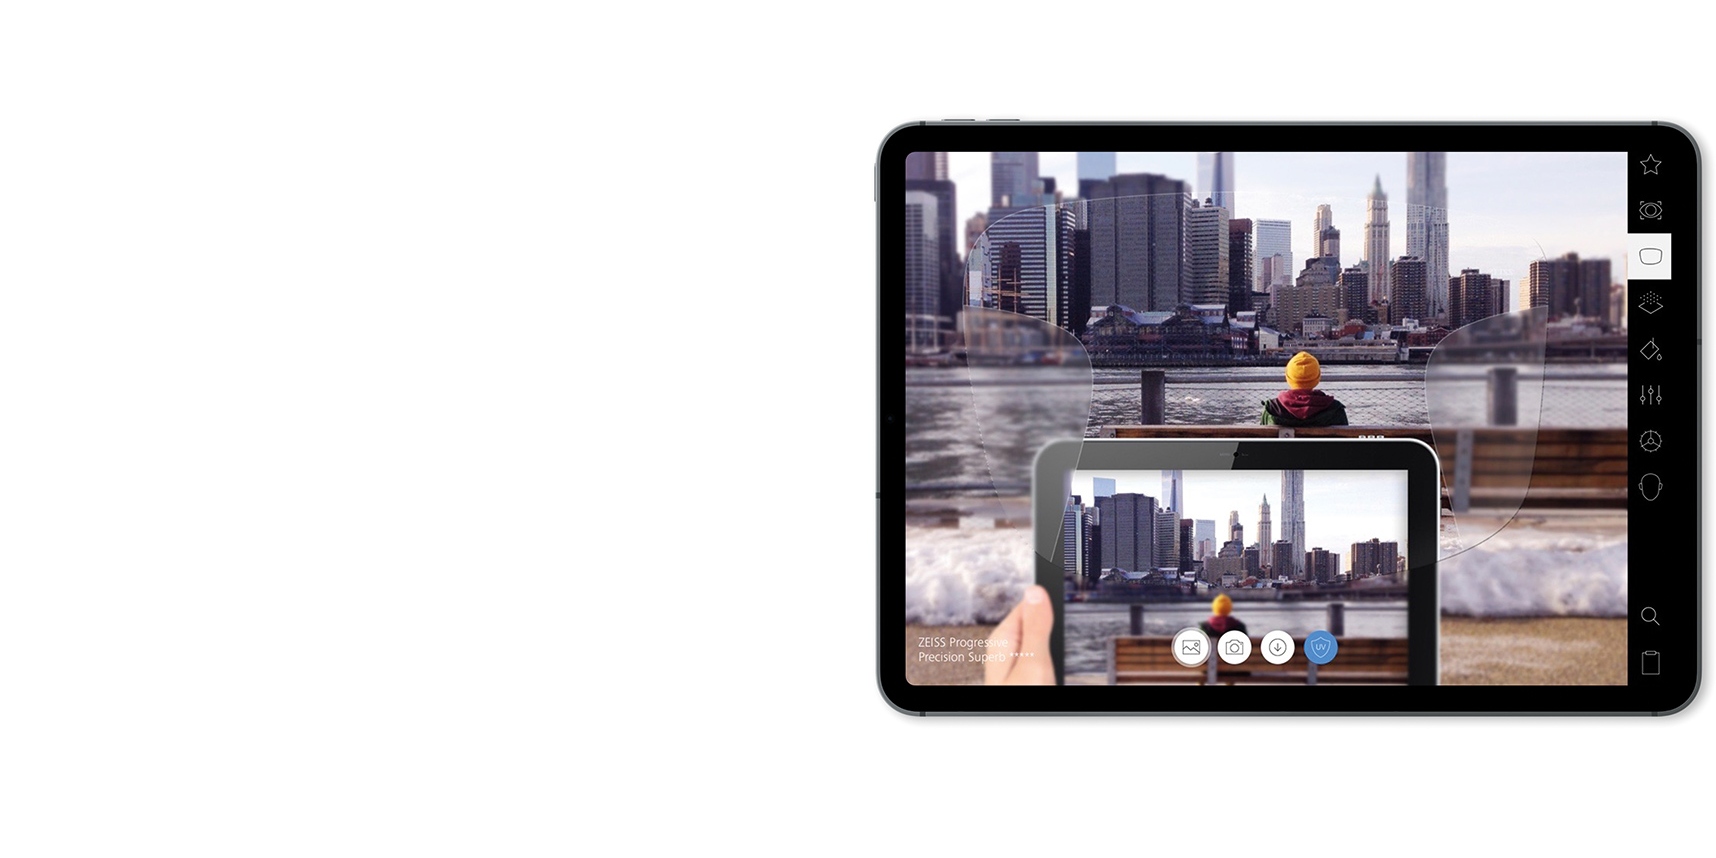 Demostración de lentes ZEISS en iPad en AR.